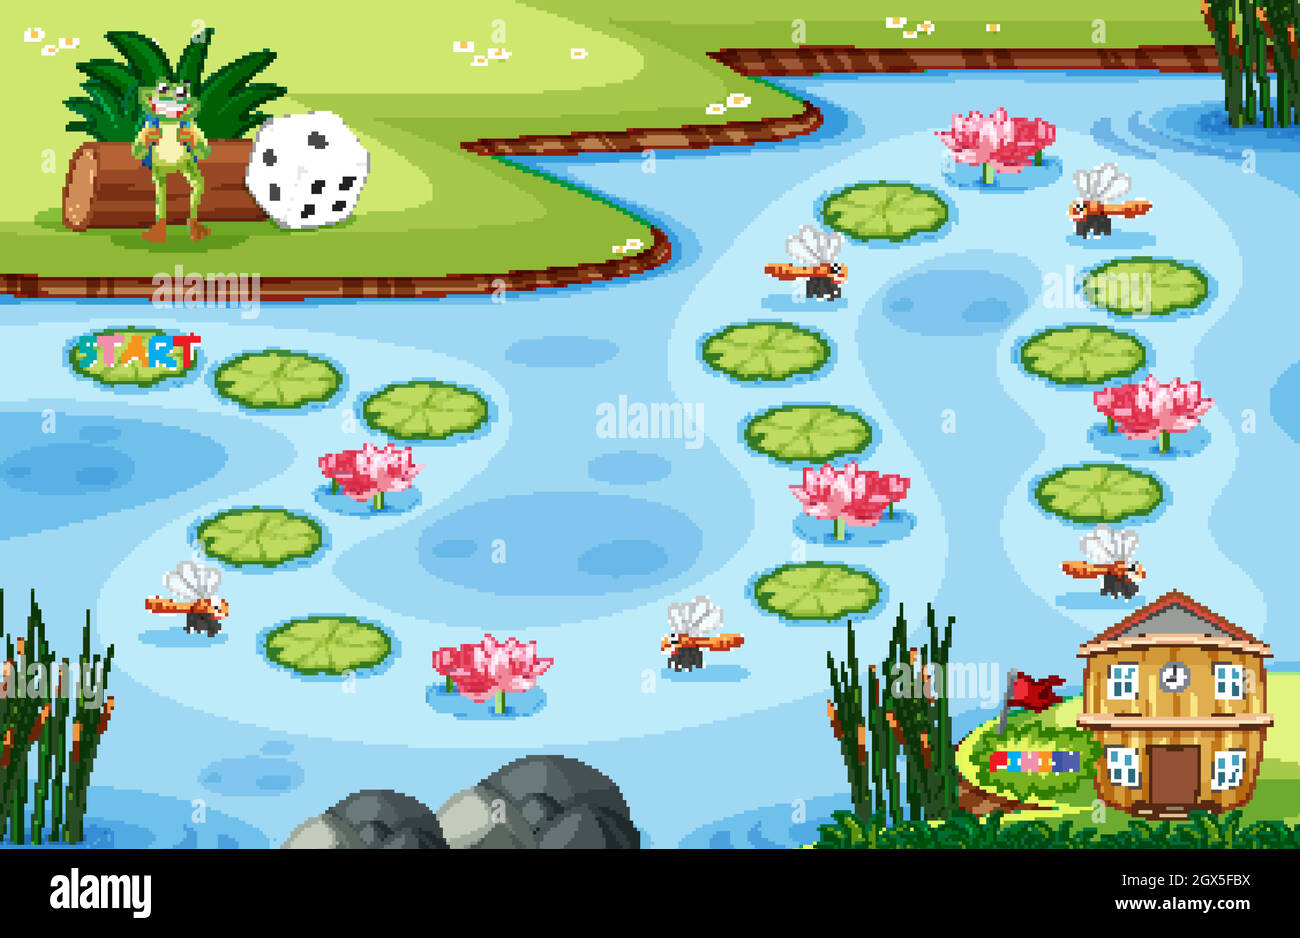 Modèle de jeu avec petite grenouille et feuille de lotus sur marécage en arrière-plan de la forêt Illustration de Vecteur